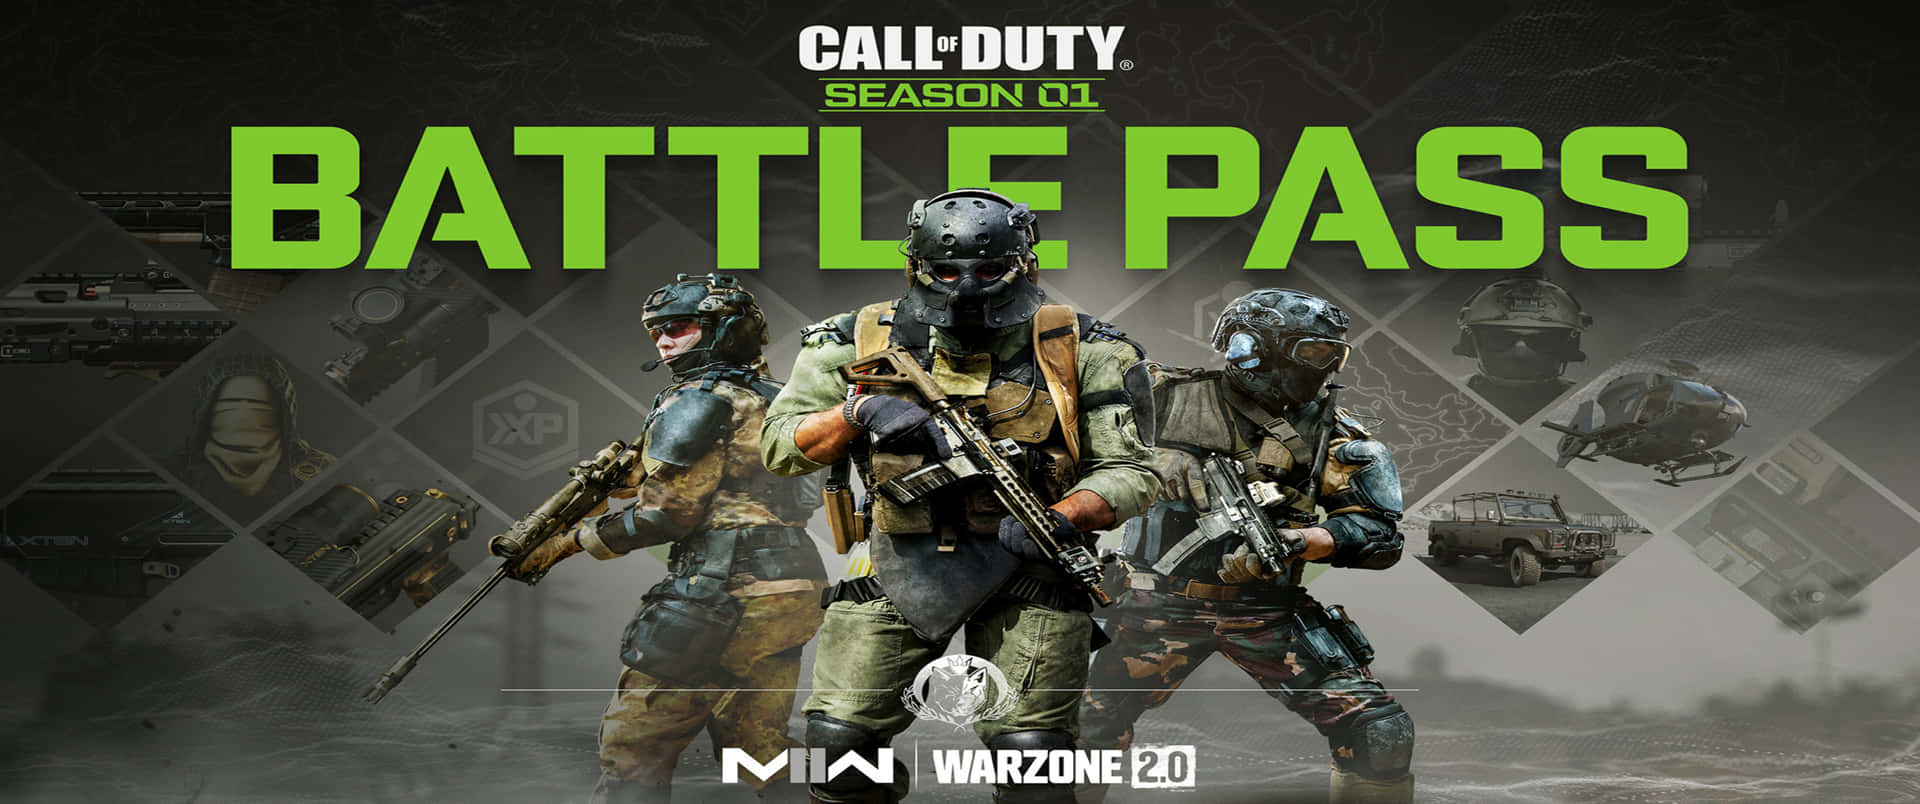 Stagione01 Pass Battaglia Sfondo Call Of Duty Modern Warfare 3440x1440p